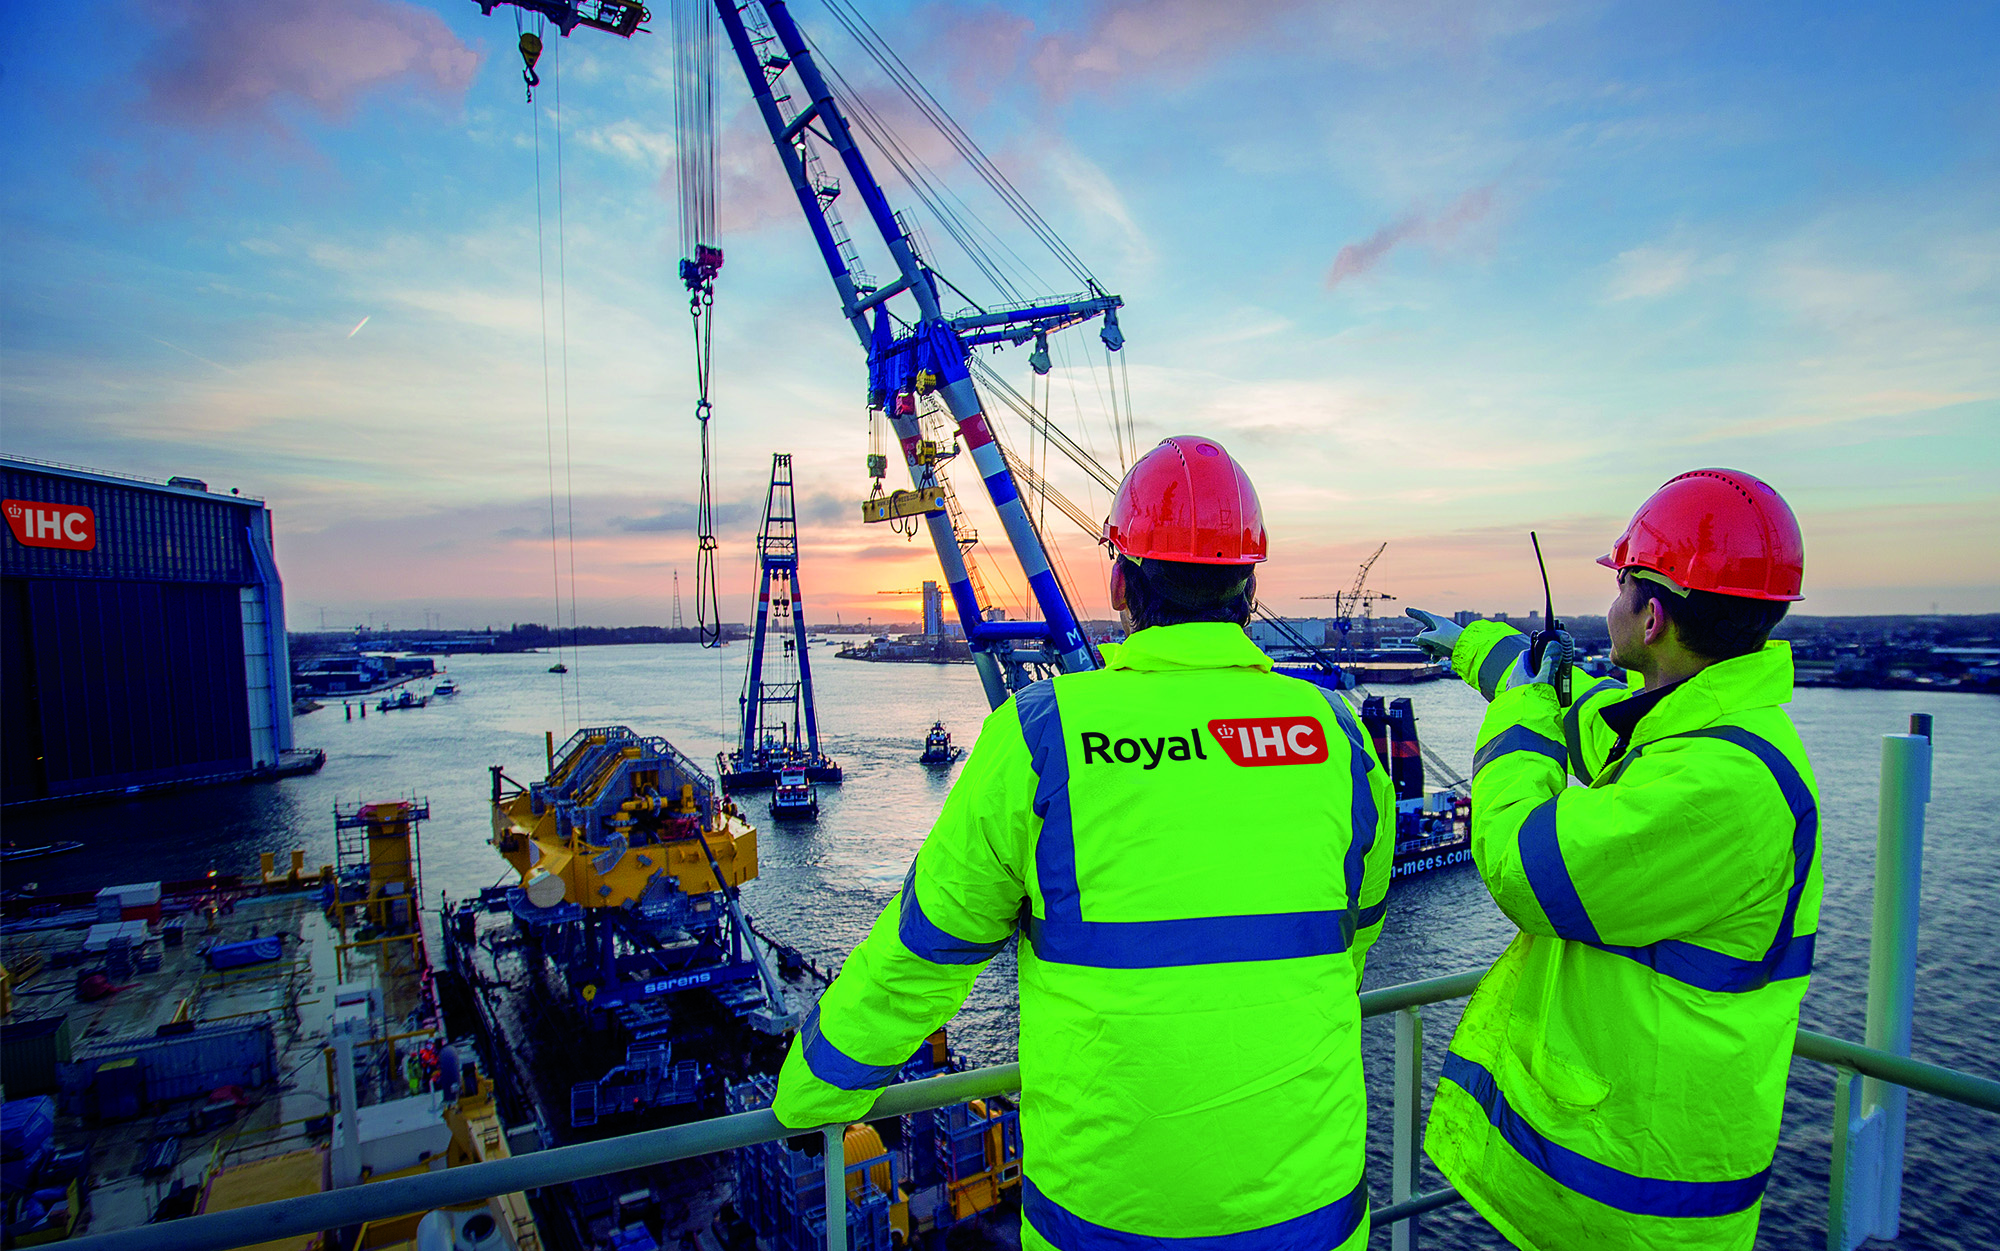 Royal IHC employees at shipyard with crane at sundown